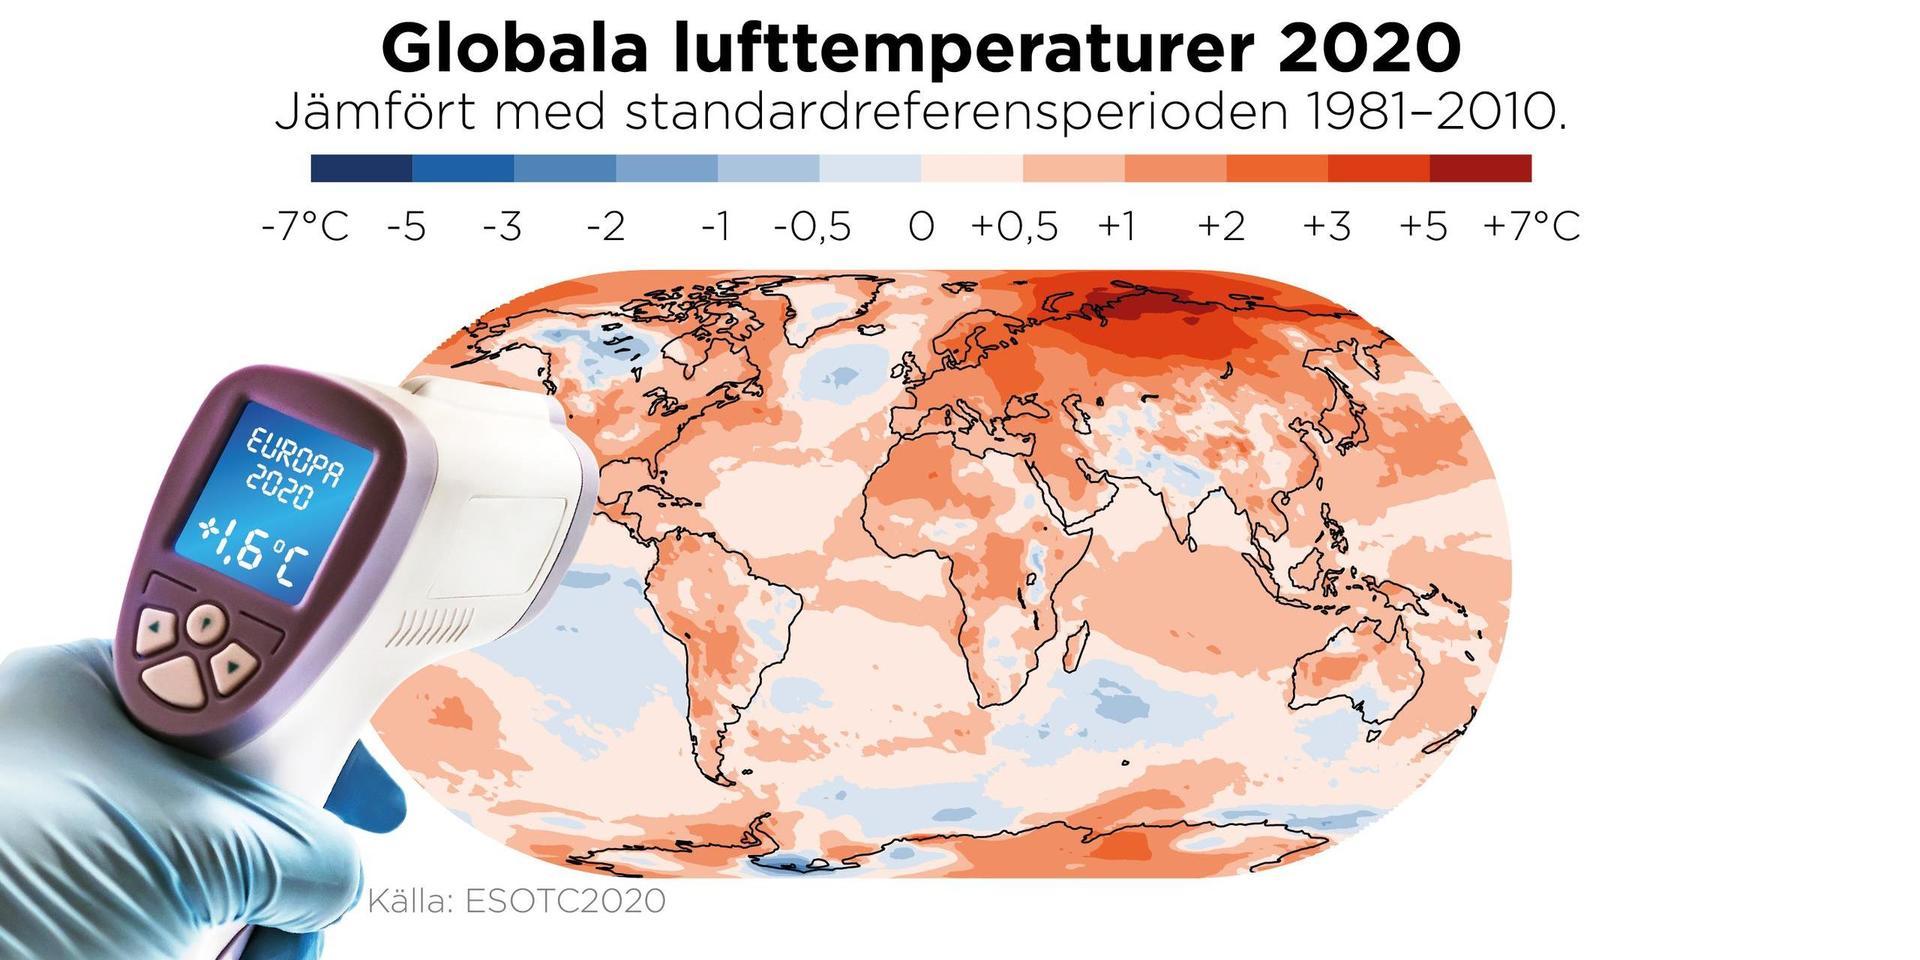 2020 var det varmaste året som har uppmätts i Europa, och det tredje varmaste globalt – trots en kylande La Niña (syns kring ekvatorn vid Stilla havet).